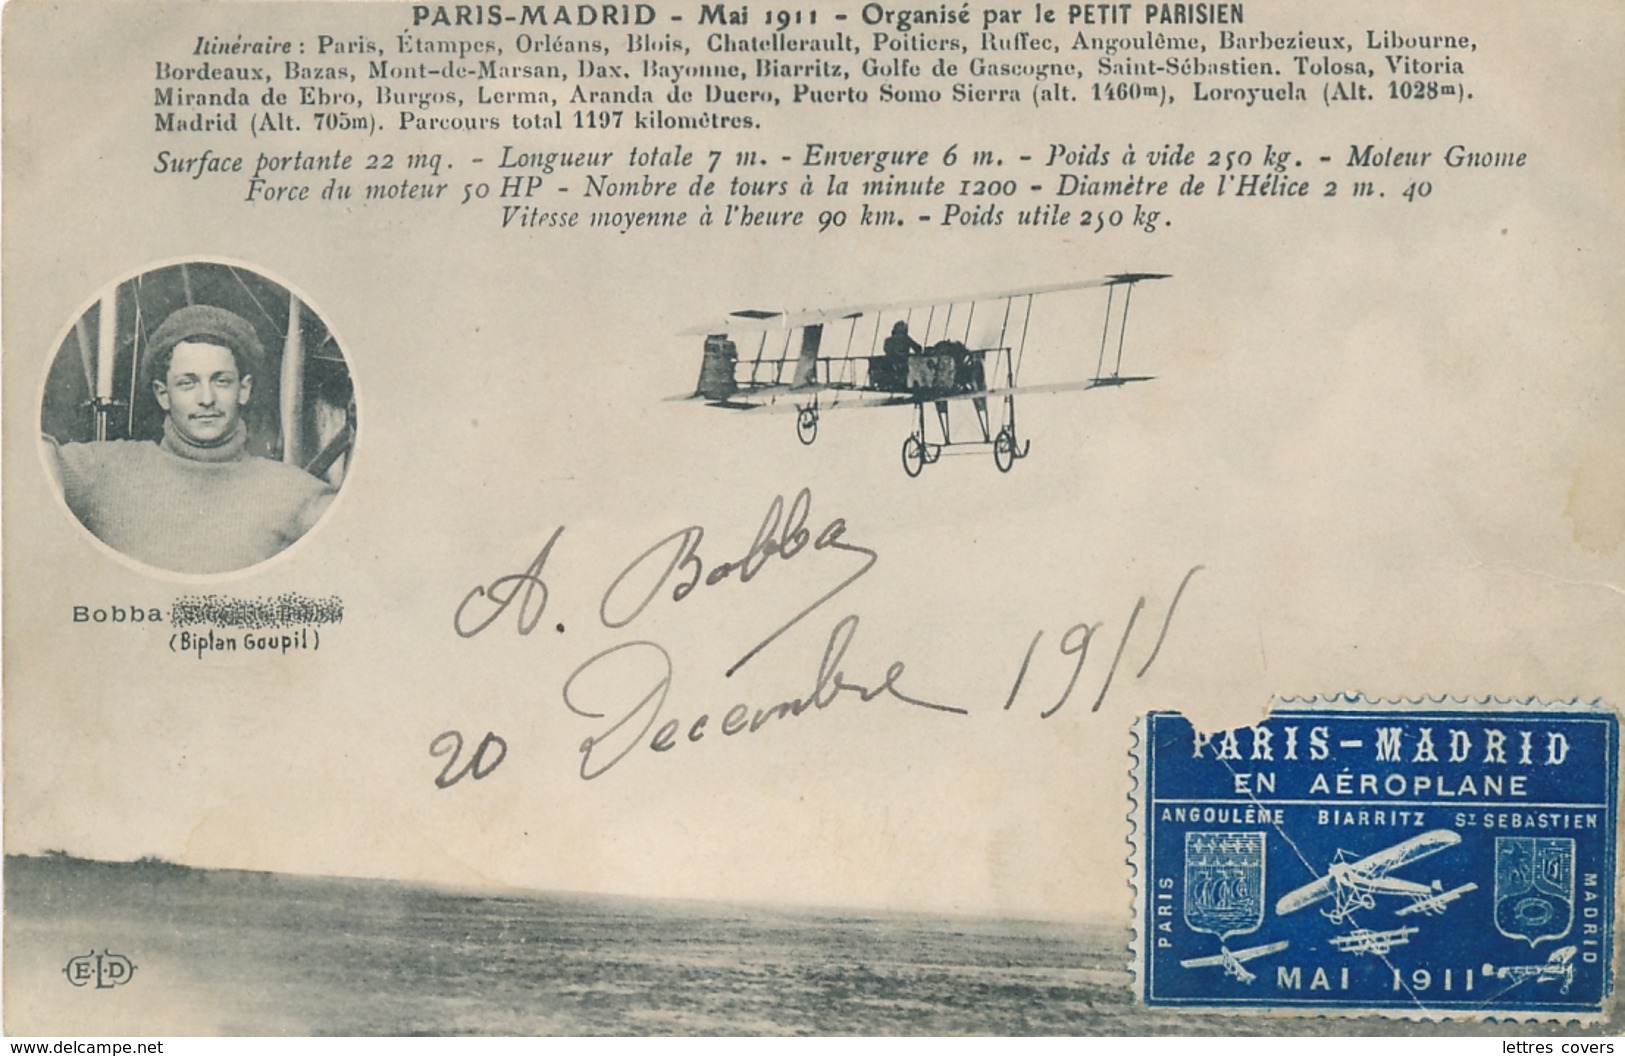 BOBBA CP " PARIS MADRID MAI 1911 Organisé PETIT PARISIEN Biplan Goupil Signature Autographe + Vignette - Airmen, Fliers